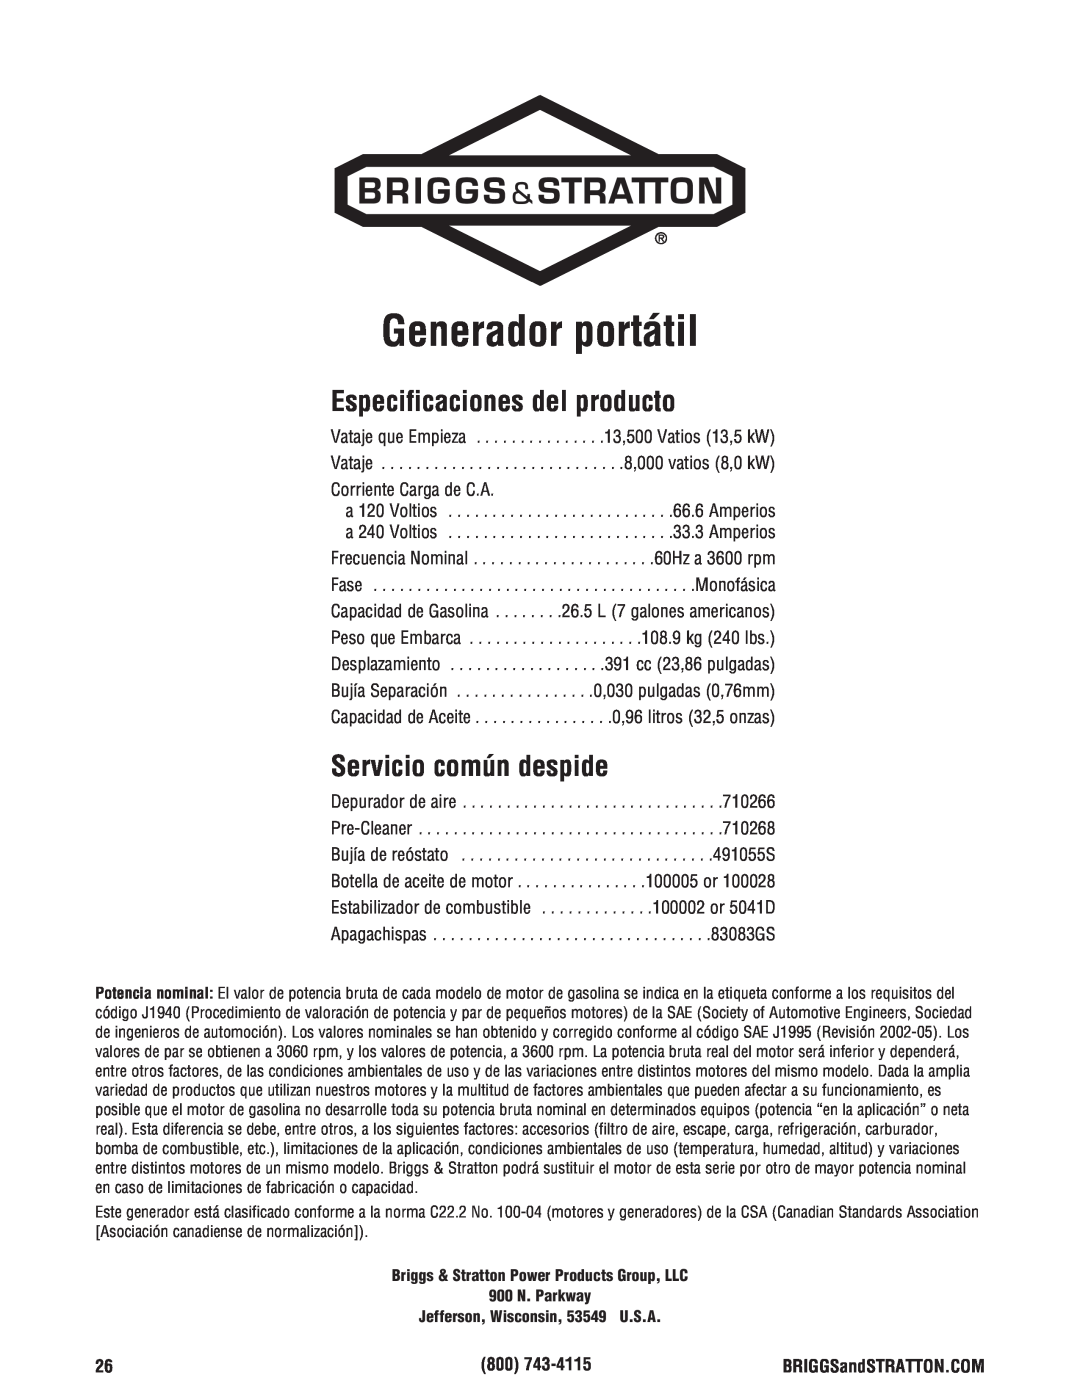 Briggs & Stratton 206405GS manual Generador portátil, Especificaciones del producto, Servicio común despide 